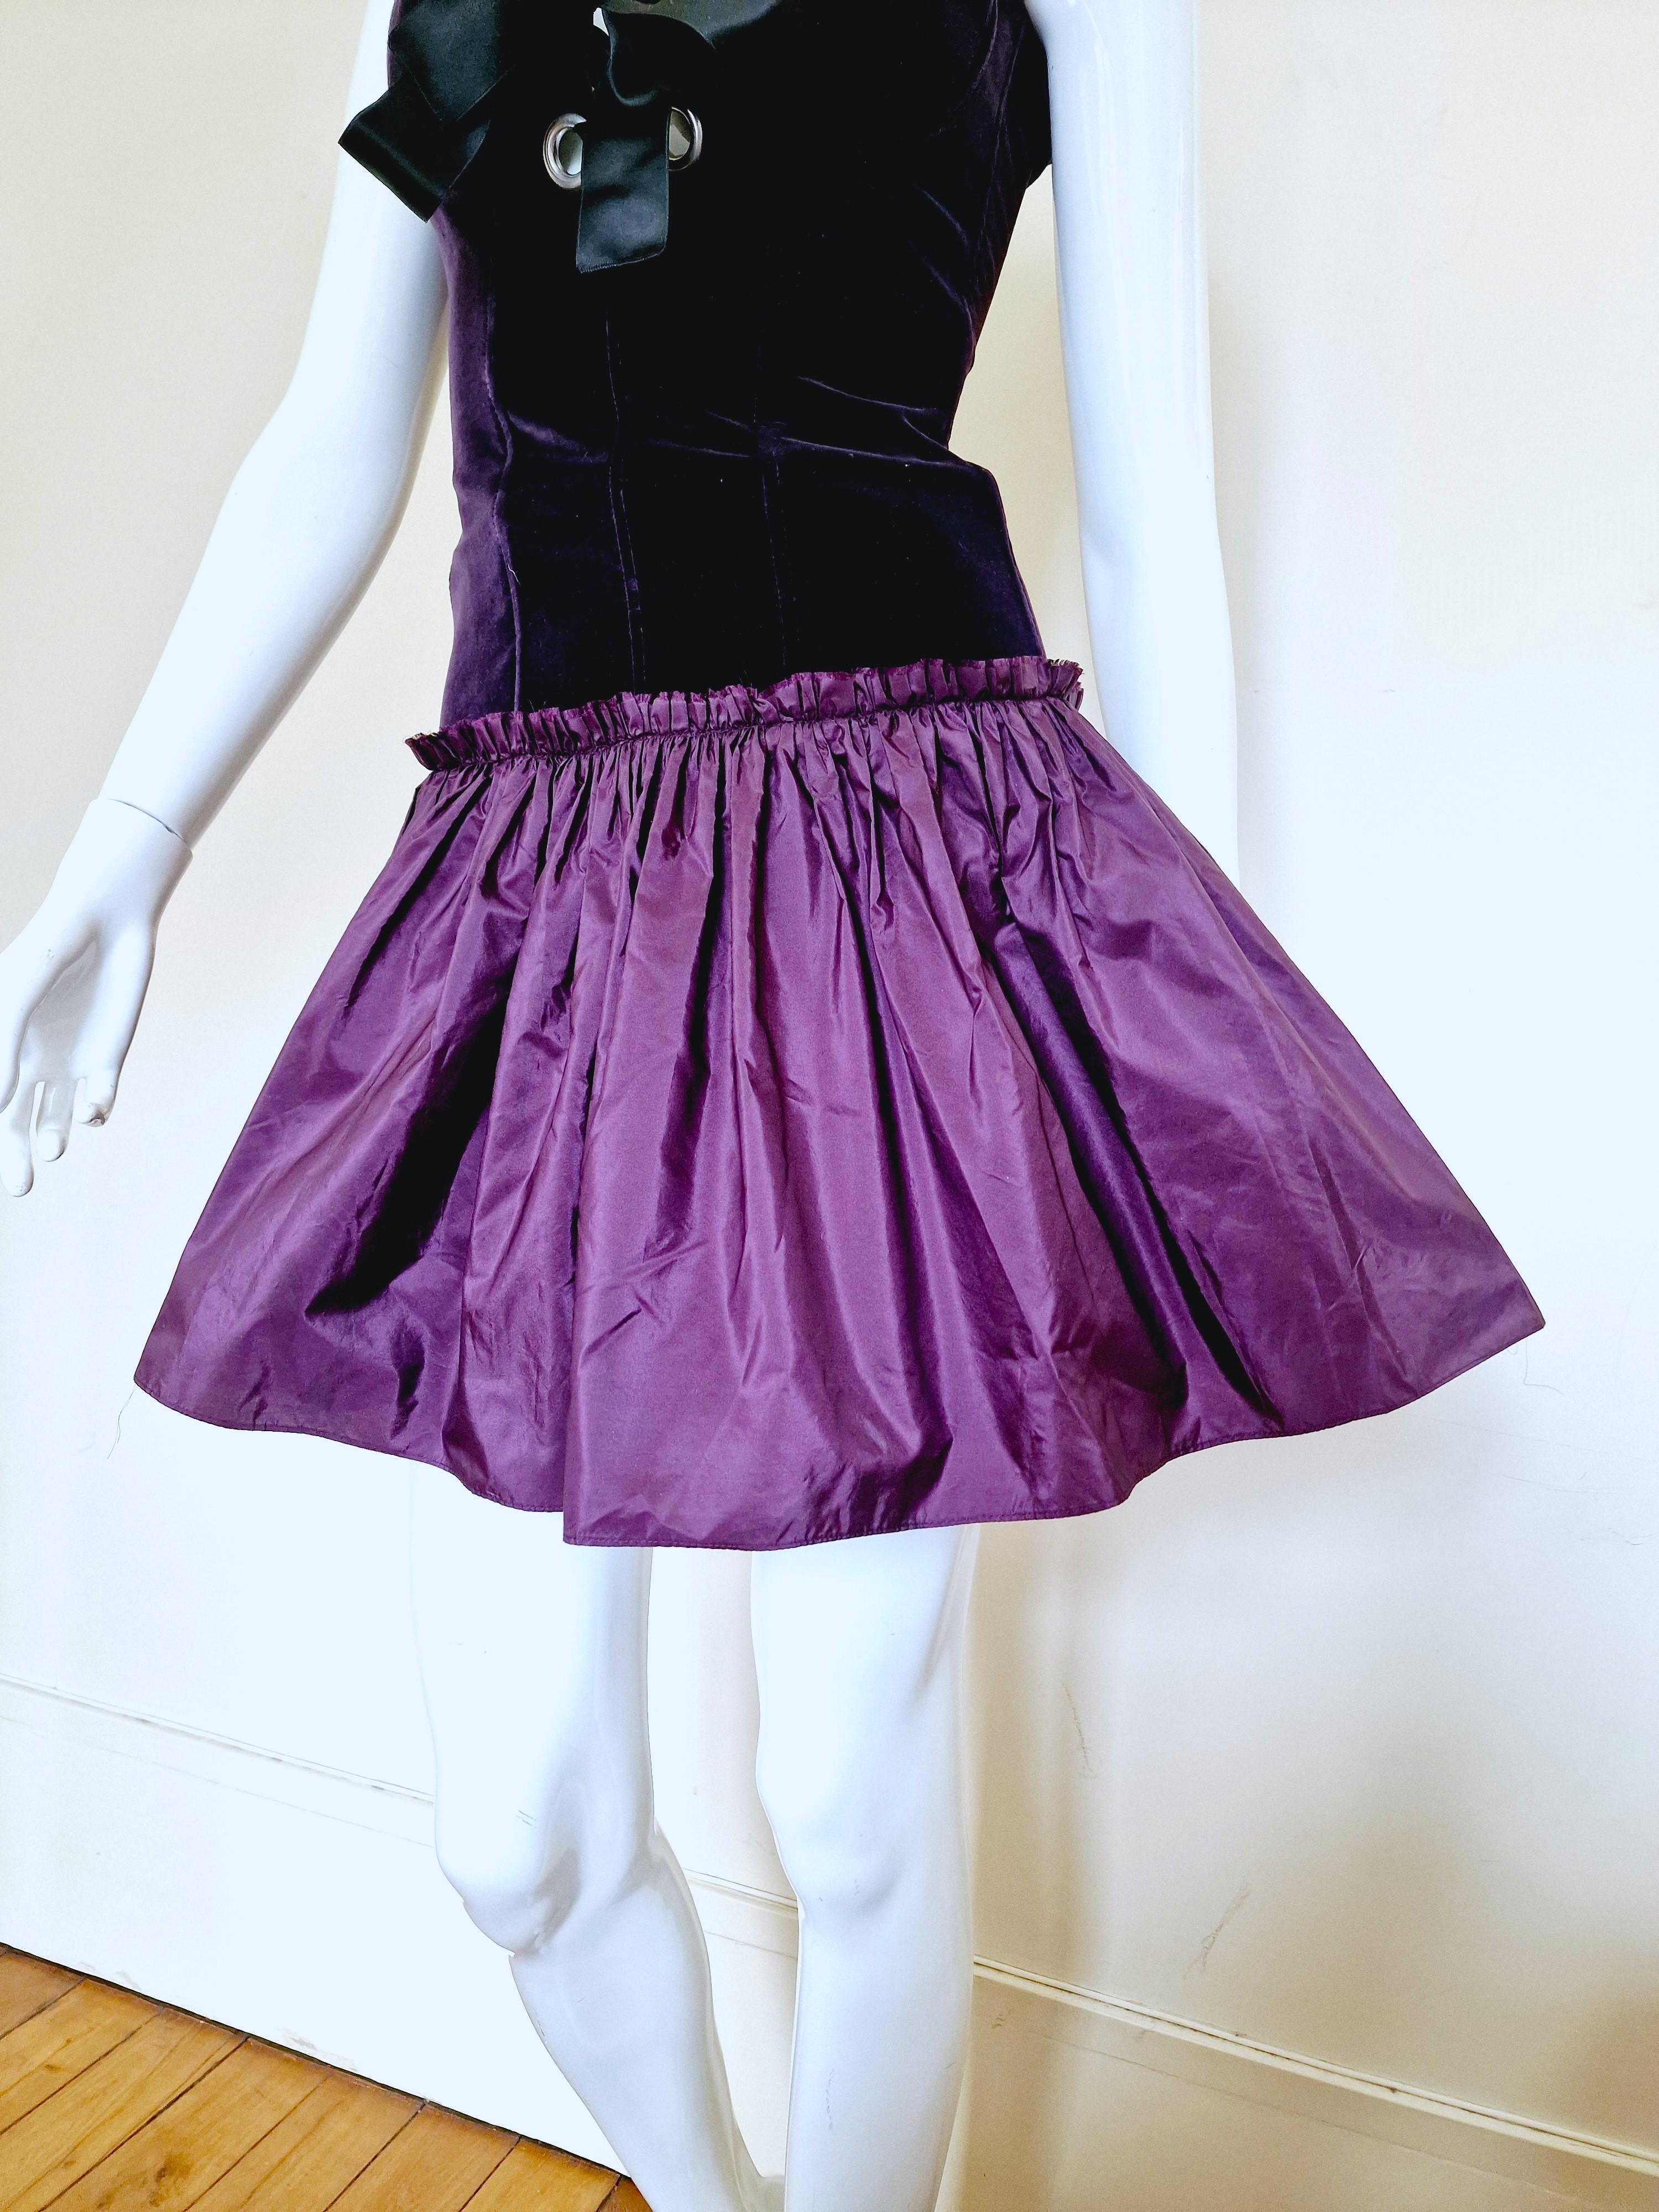 Alexander McQueen Corset Bustier Lace Up Tutu Petticoat Violet Medium Gown Dress For Sale 2